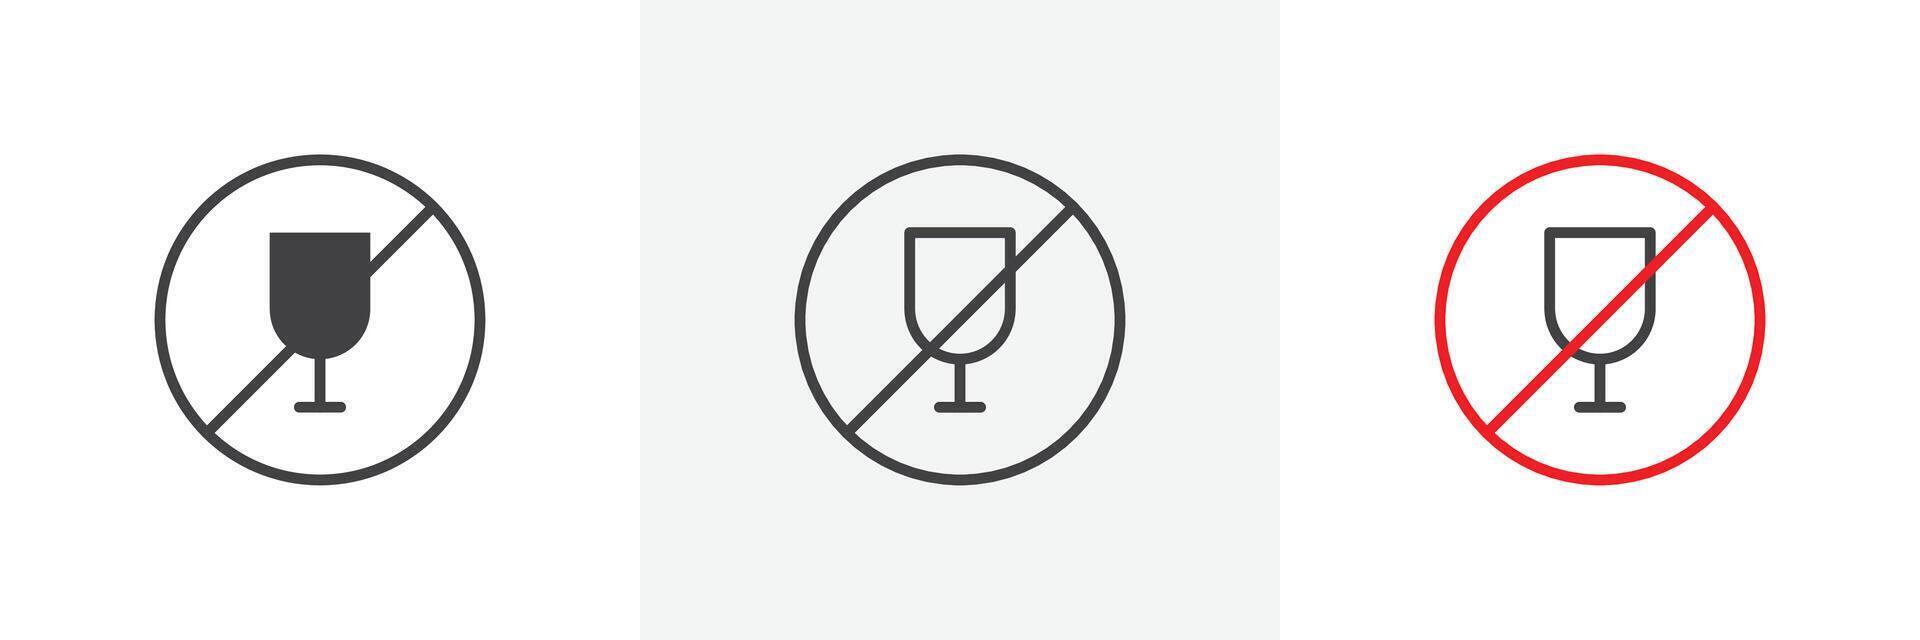 Nein Wein Zeichen einstellen vektor